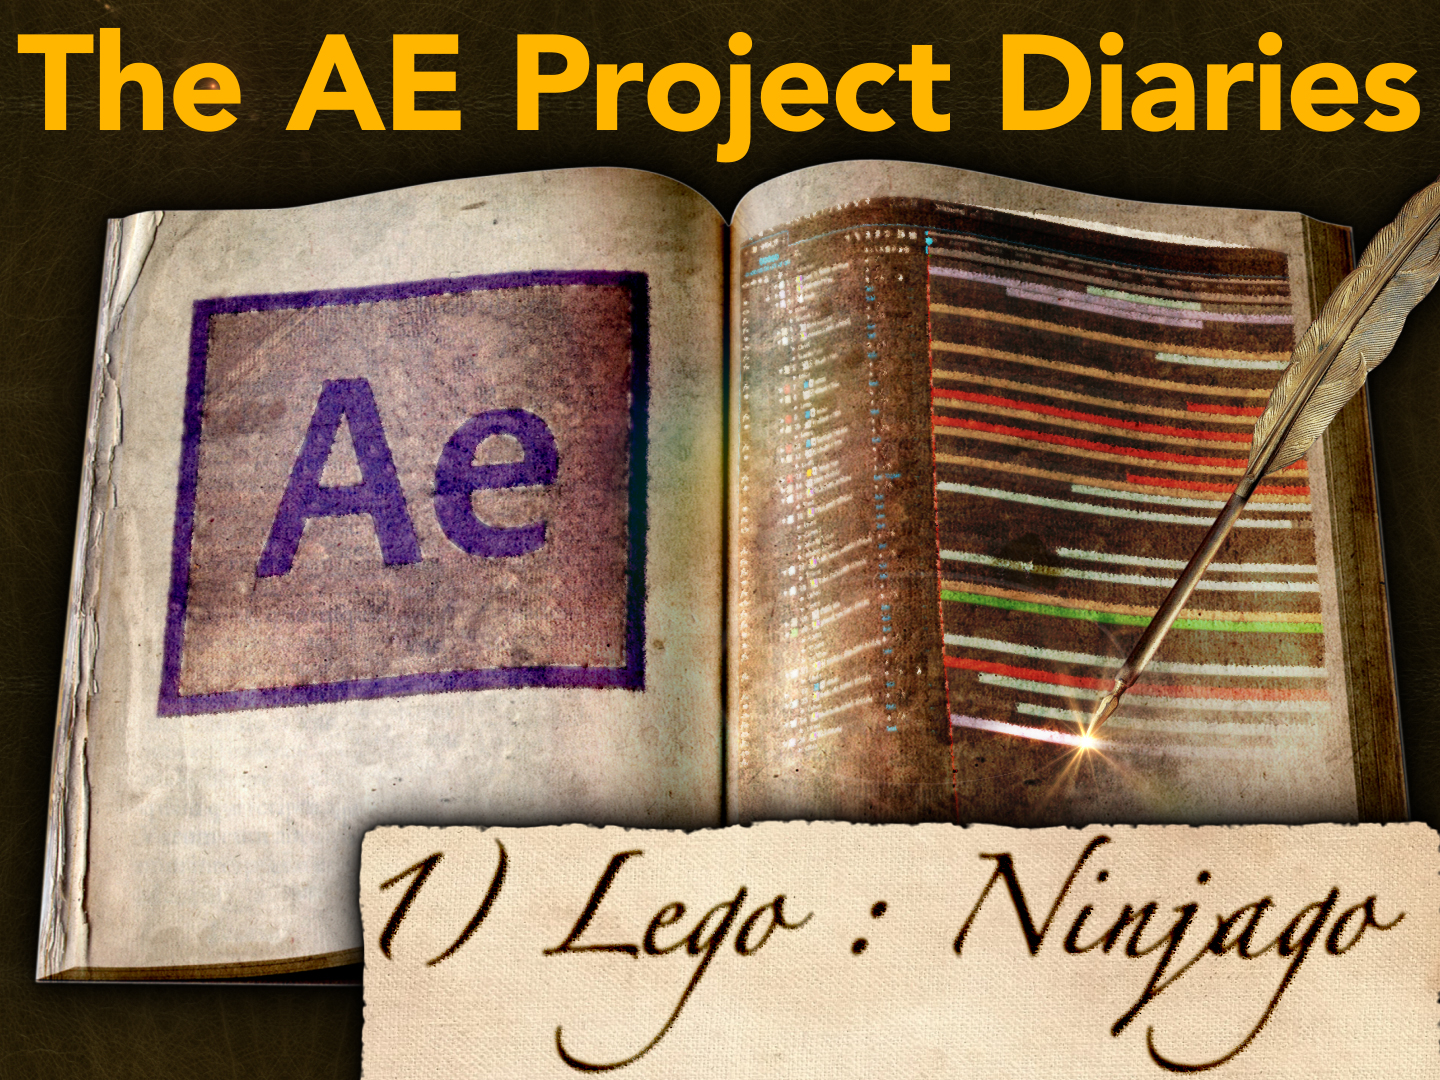 AE Project Diary: 1) Lego, Ninjago 13